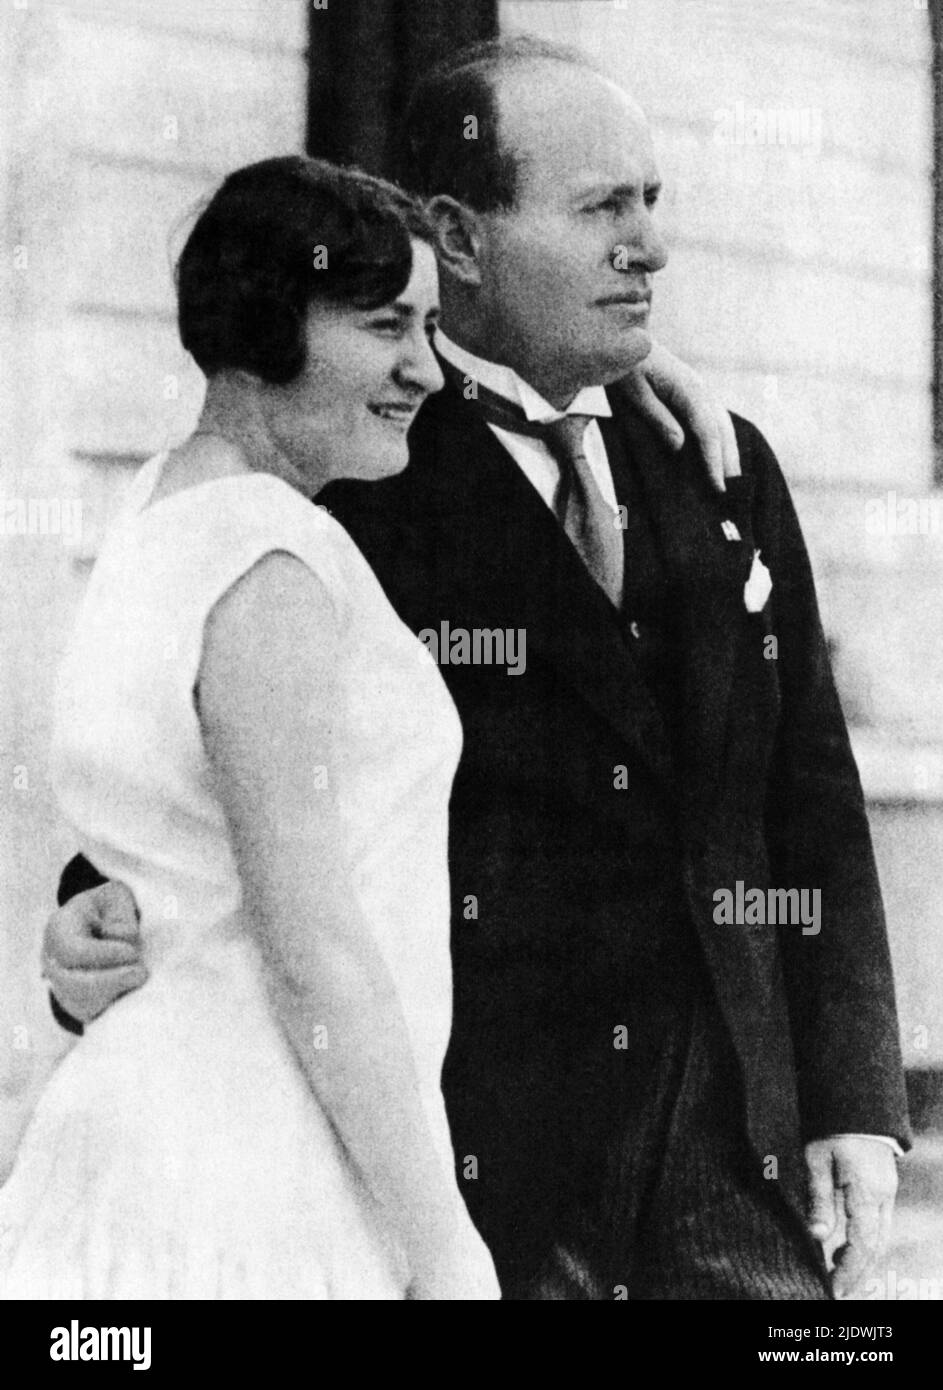 1927 , Roma , ITALIA : il dittatore italiano Duce BENITO MUSSOLINI ( 1883 - 1945 ) con la figlia EDDA ( 1910 - 1995 ), poi contessa CIANO , sposato con Galeazzo CIANO nel 1930 .- FASCISMO - FASCISTA - FASCISMO - profilo ----- Archivio GBB Foto Stock